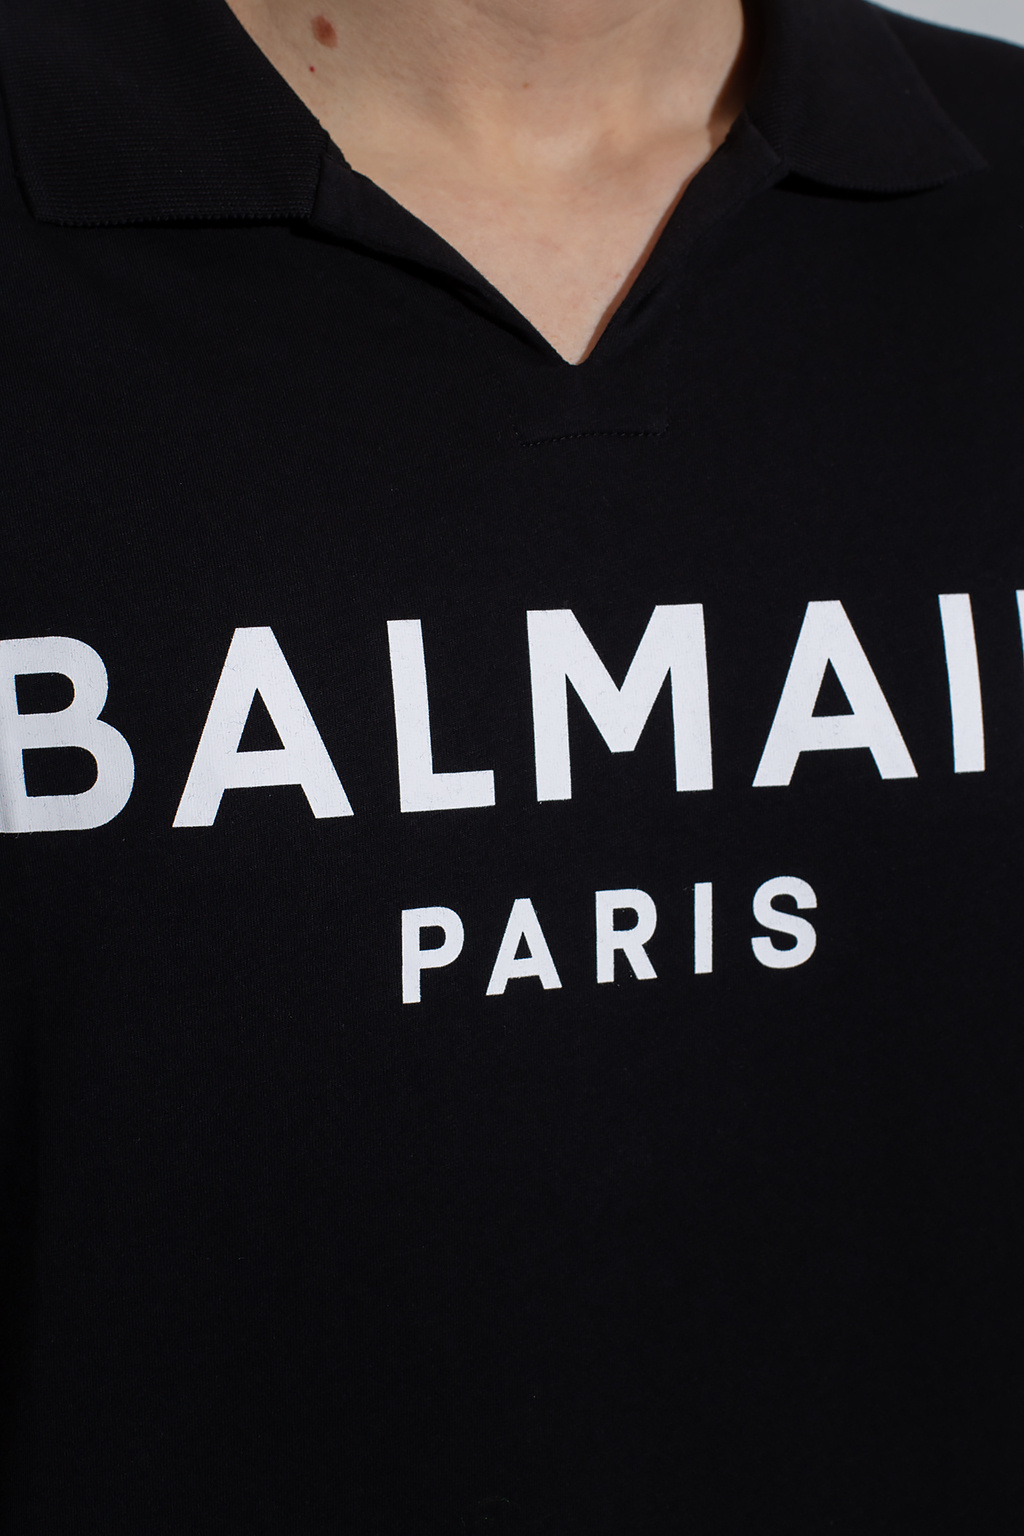 Balmain tee polo shirt with logo